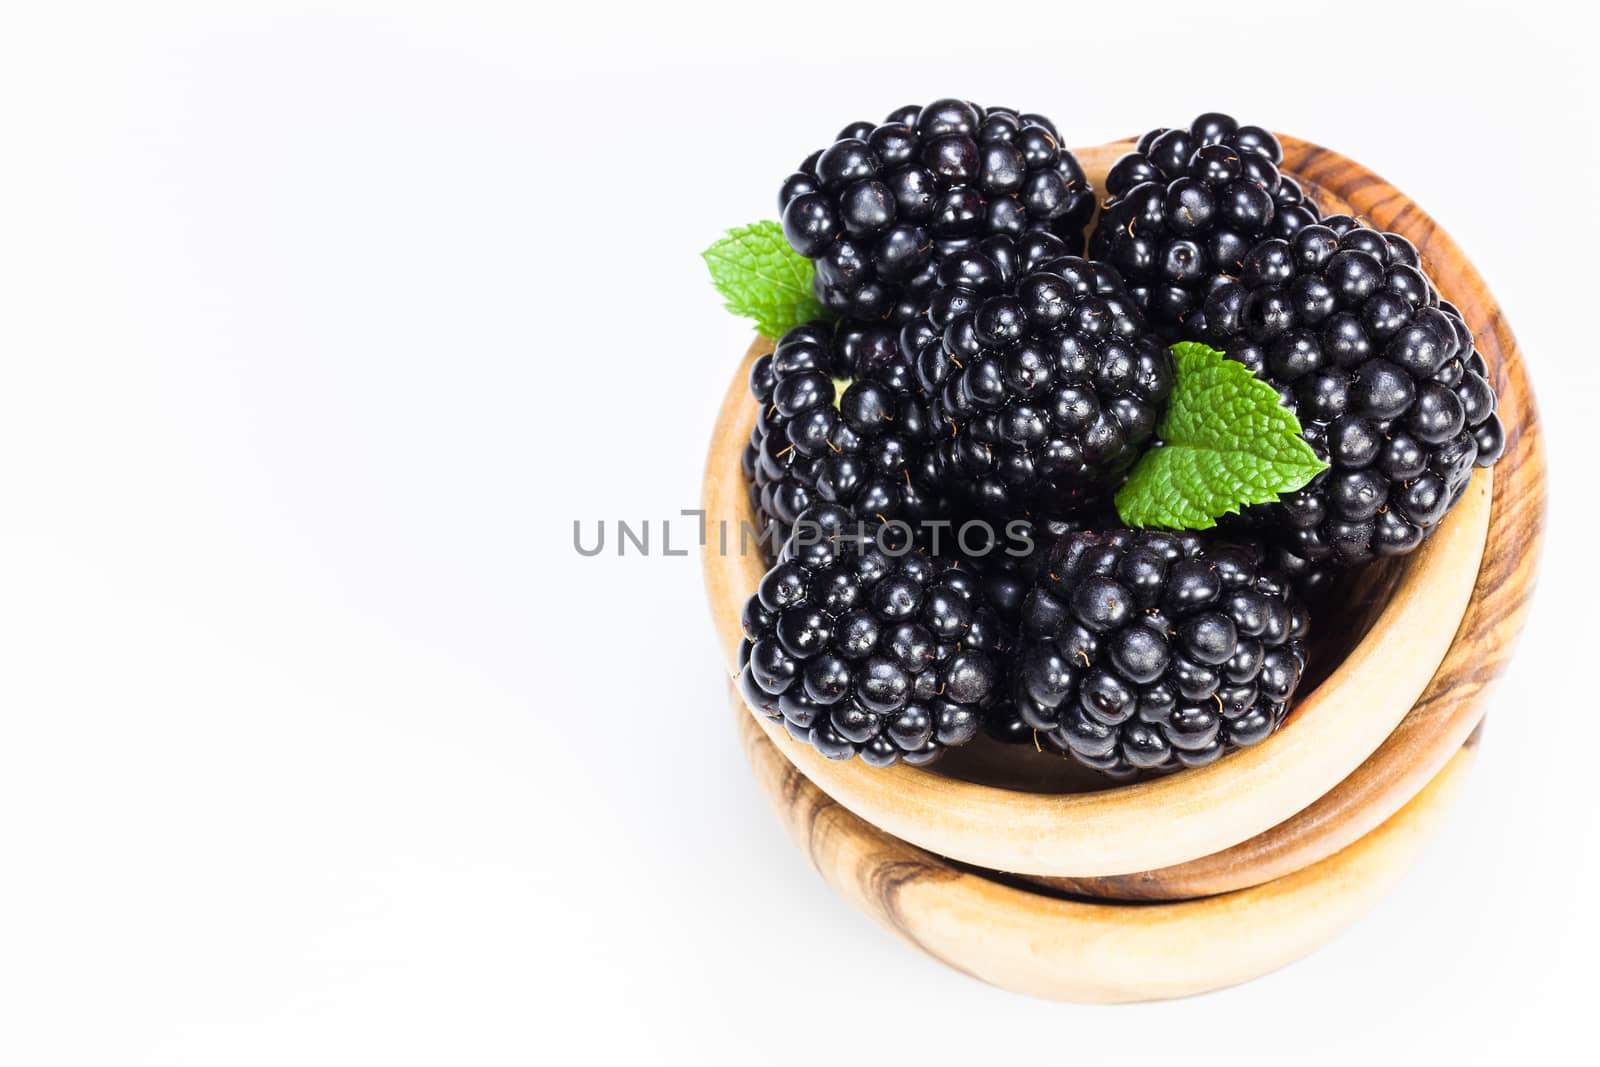 Blackberries. by Slast20